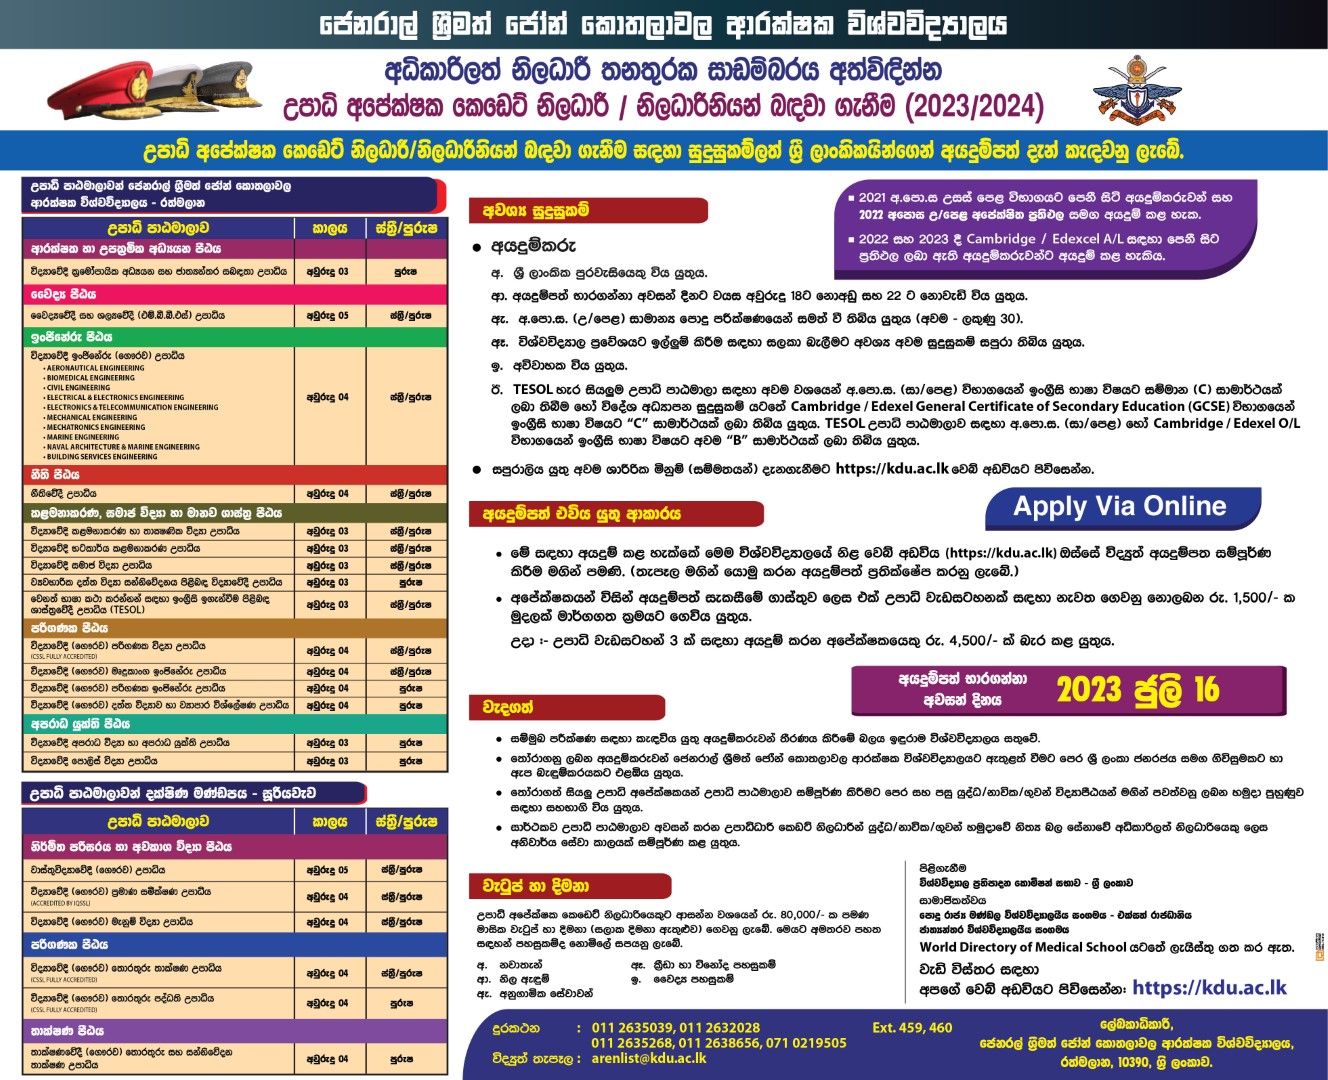 Admission for Degree Programmes (Cadetship) 2023/2024 (Intake 41) – Kotelawala Defence University (KDU) Application Form, Details Download